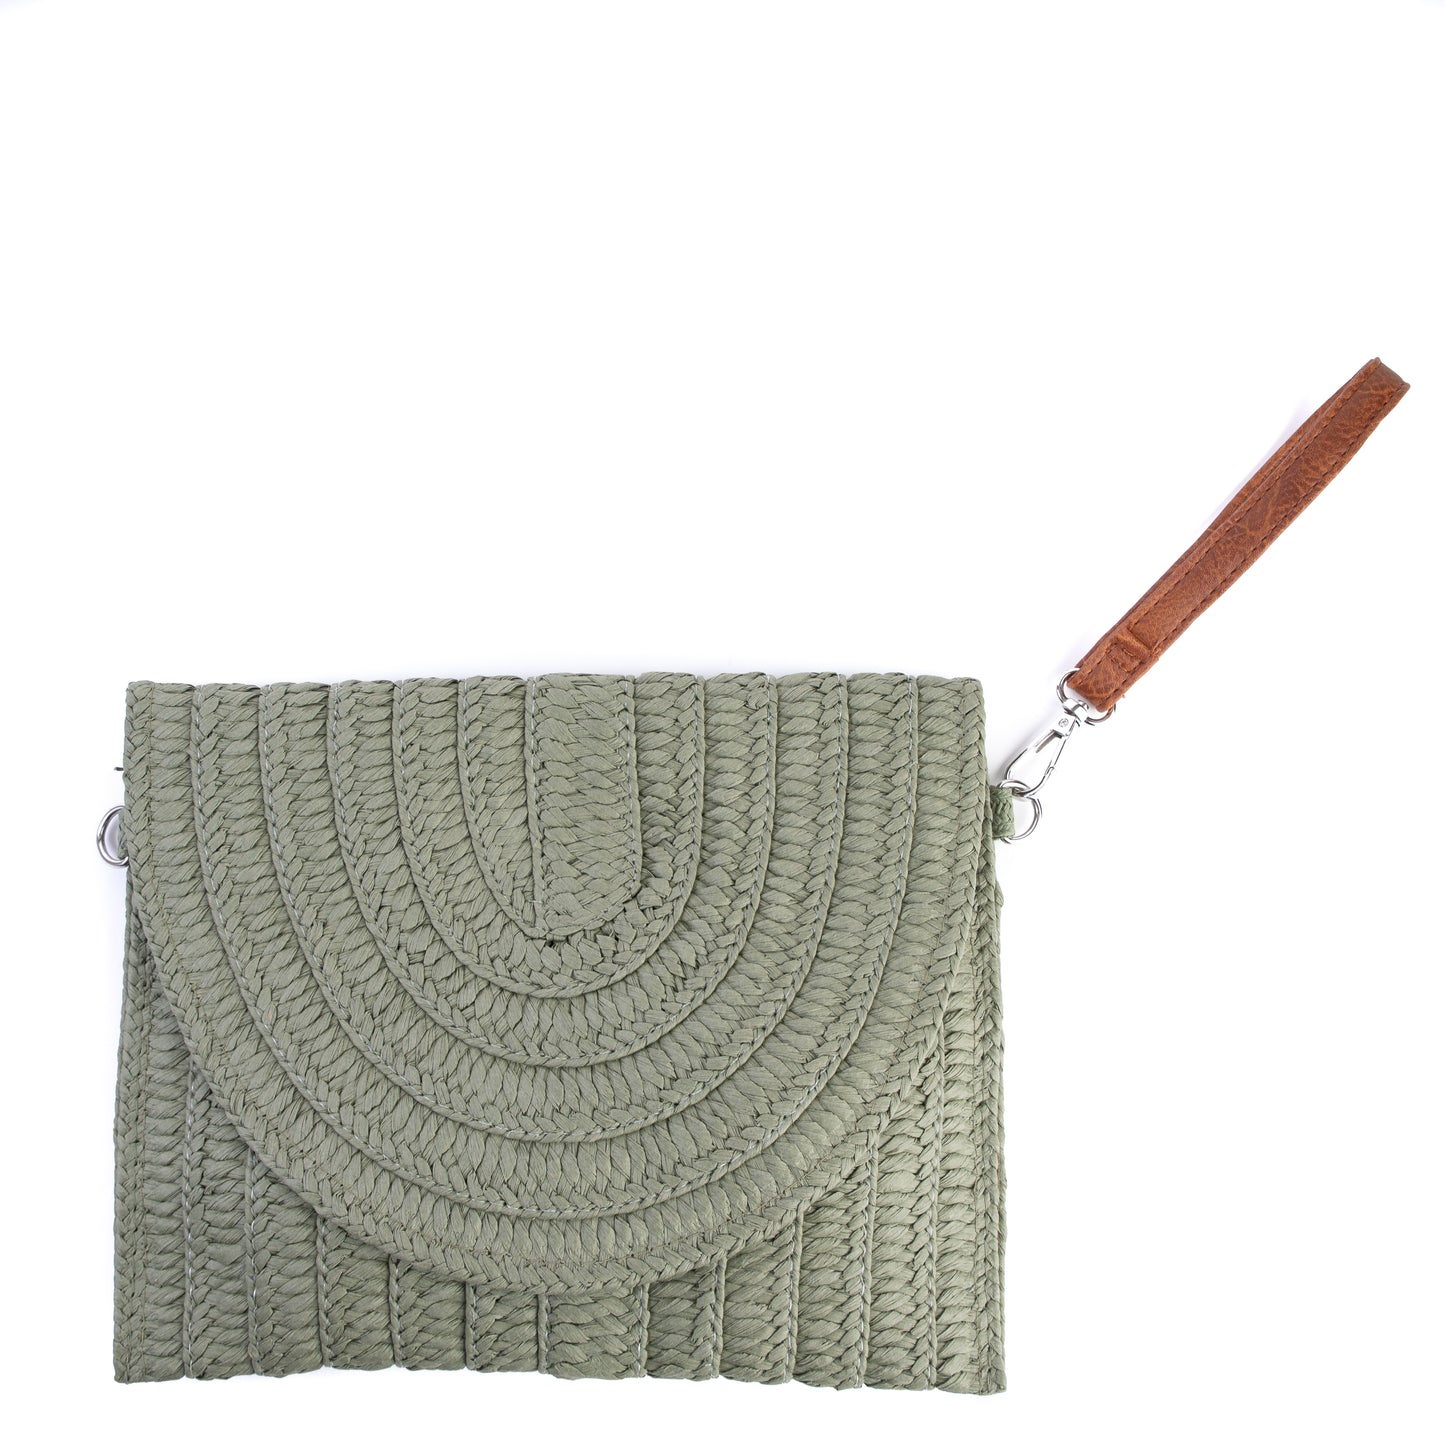 Amilu Olive Green Fold Over Braided Straw Clutch Bag